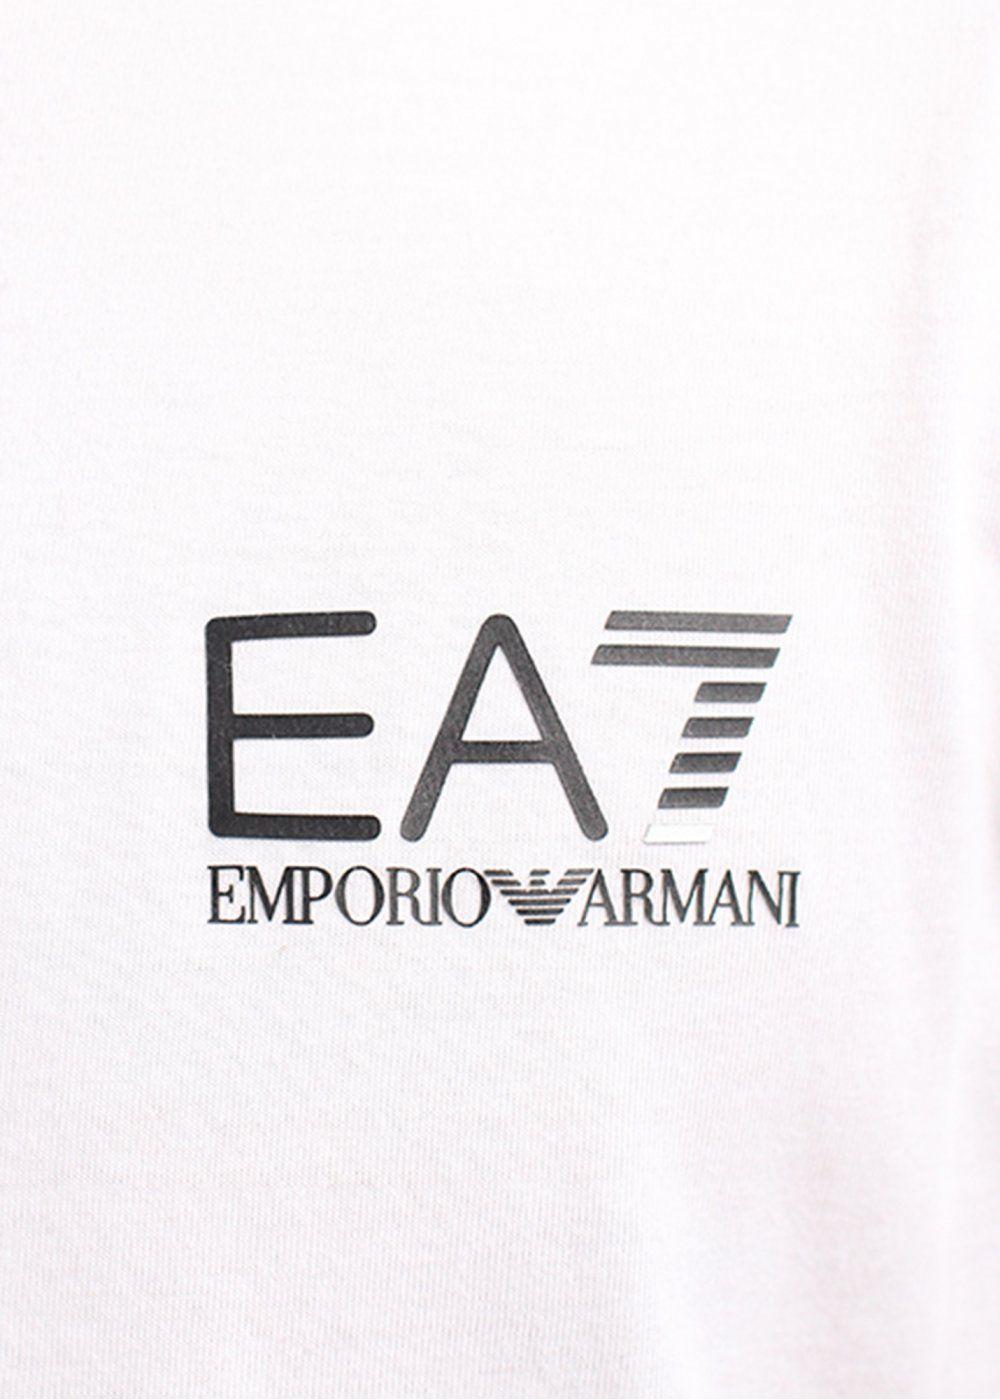 Emporio Armani Logo Wallpaper | HQ Wallpapers